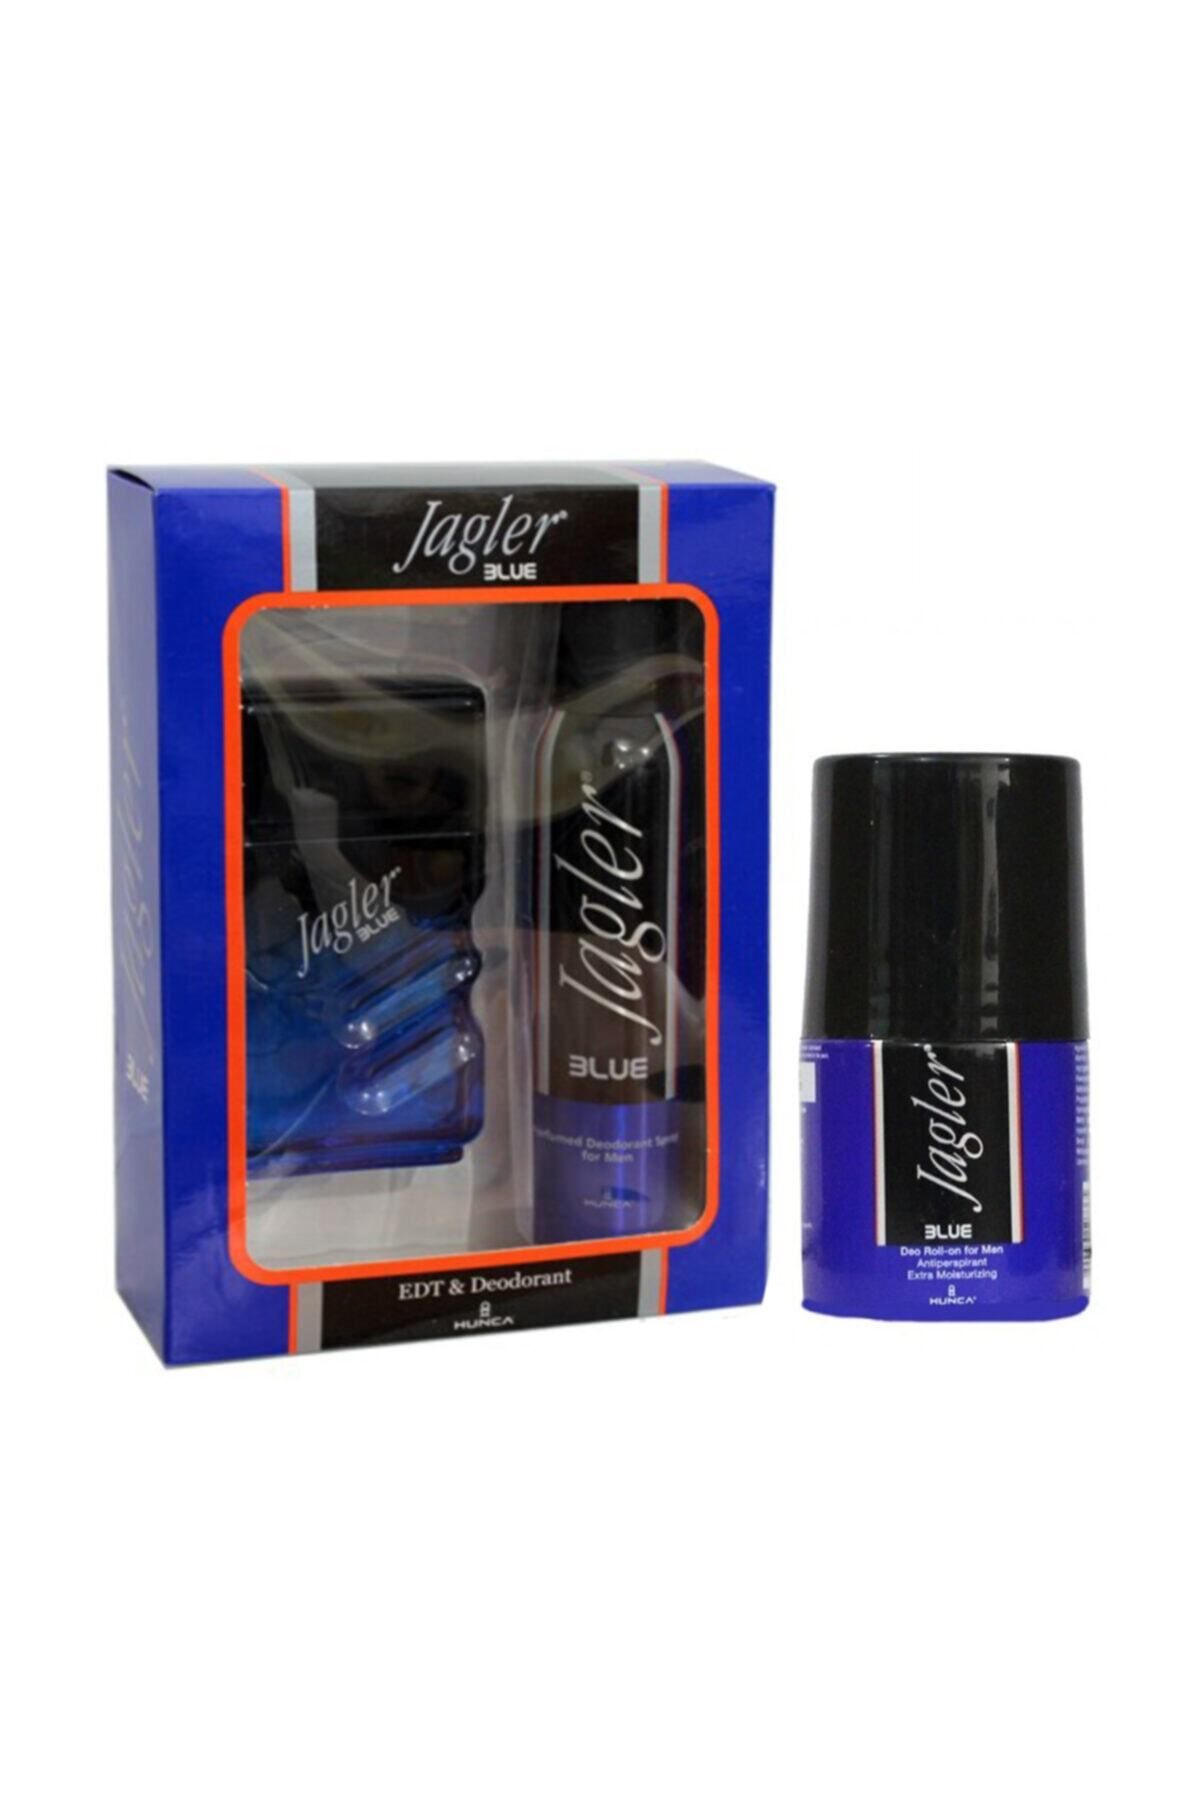 Jagler Blue Edt 90 ml + 150 ml Deodorant + 50 ml Roll-on Erkek Parfüm Seti 86909733712550